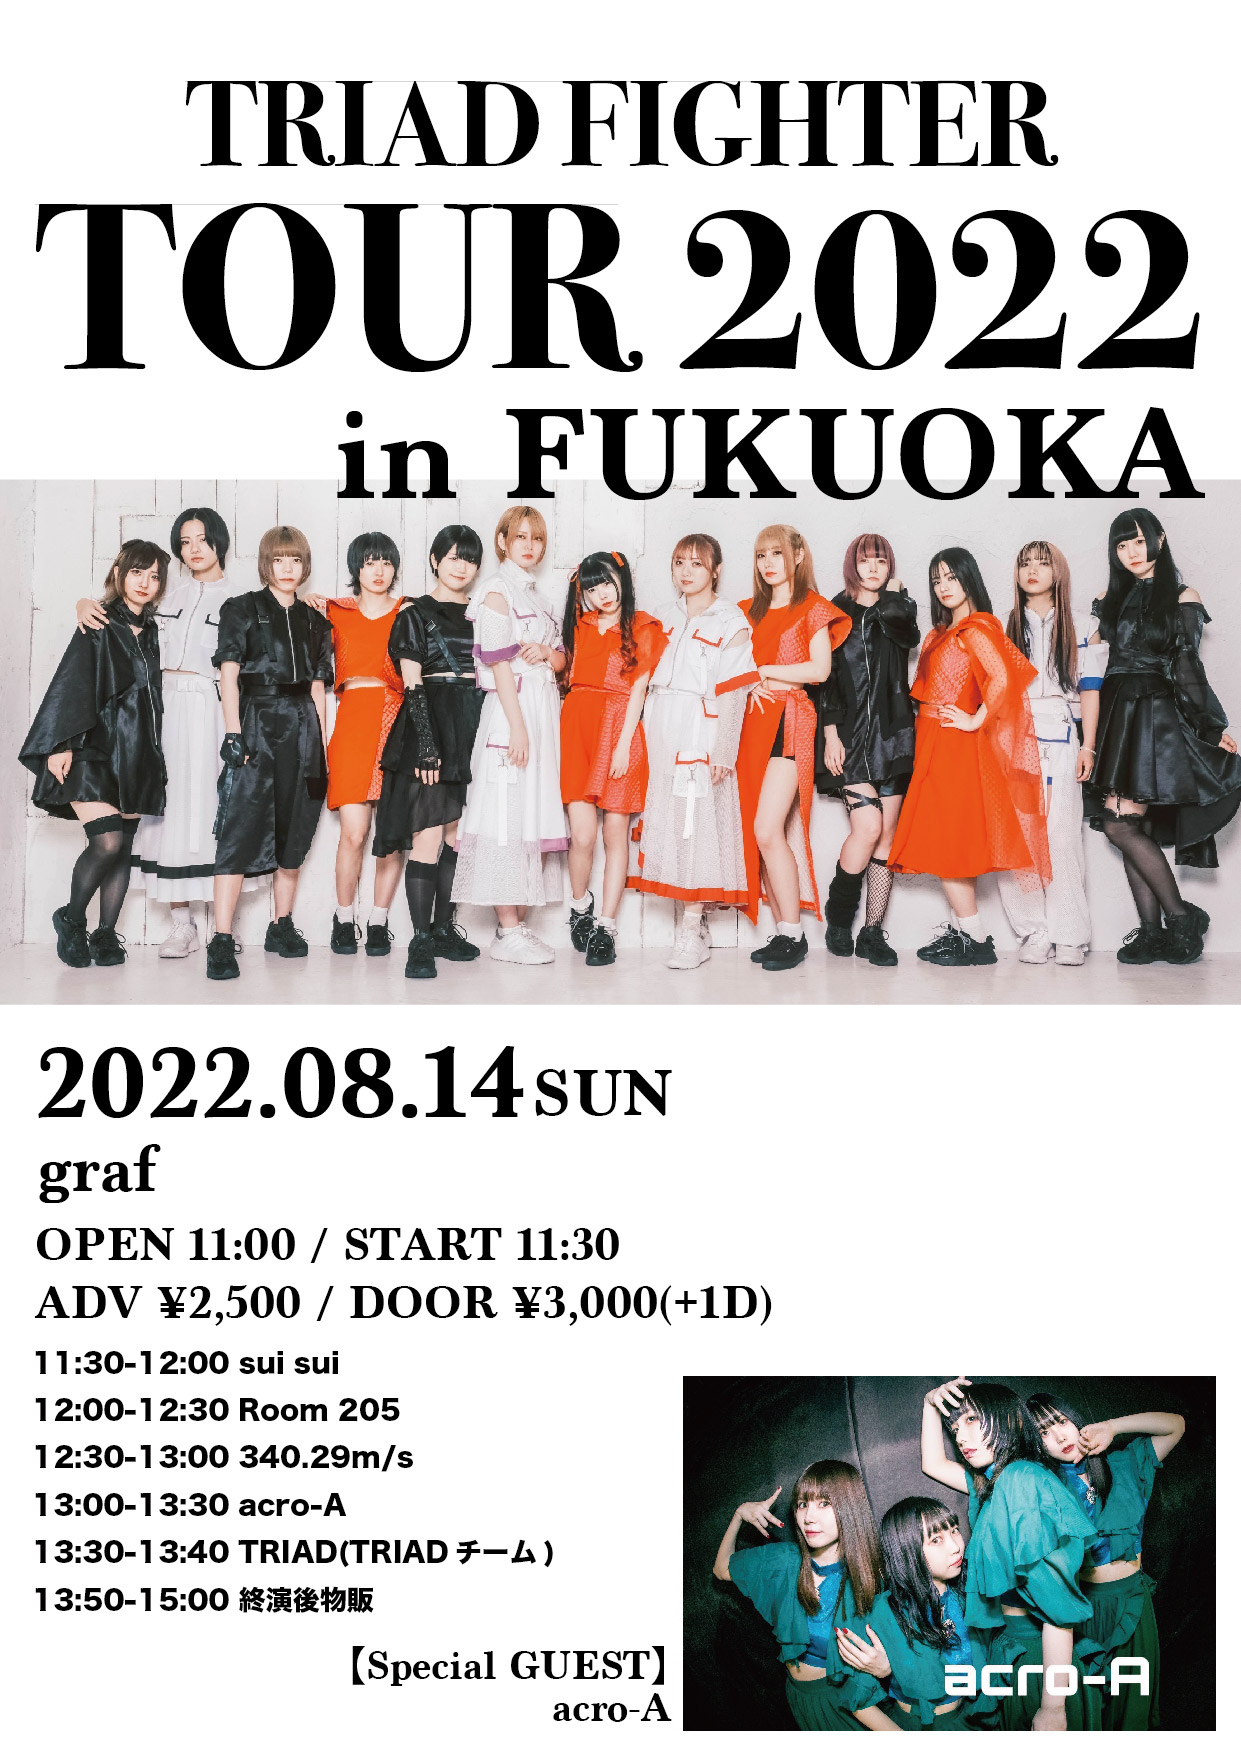 TRIAD FIGHTER TOUR 2022 in FUKUOKA